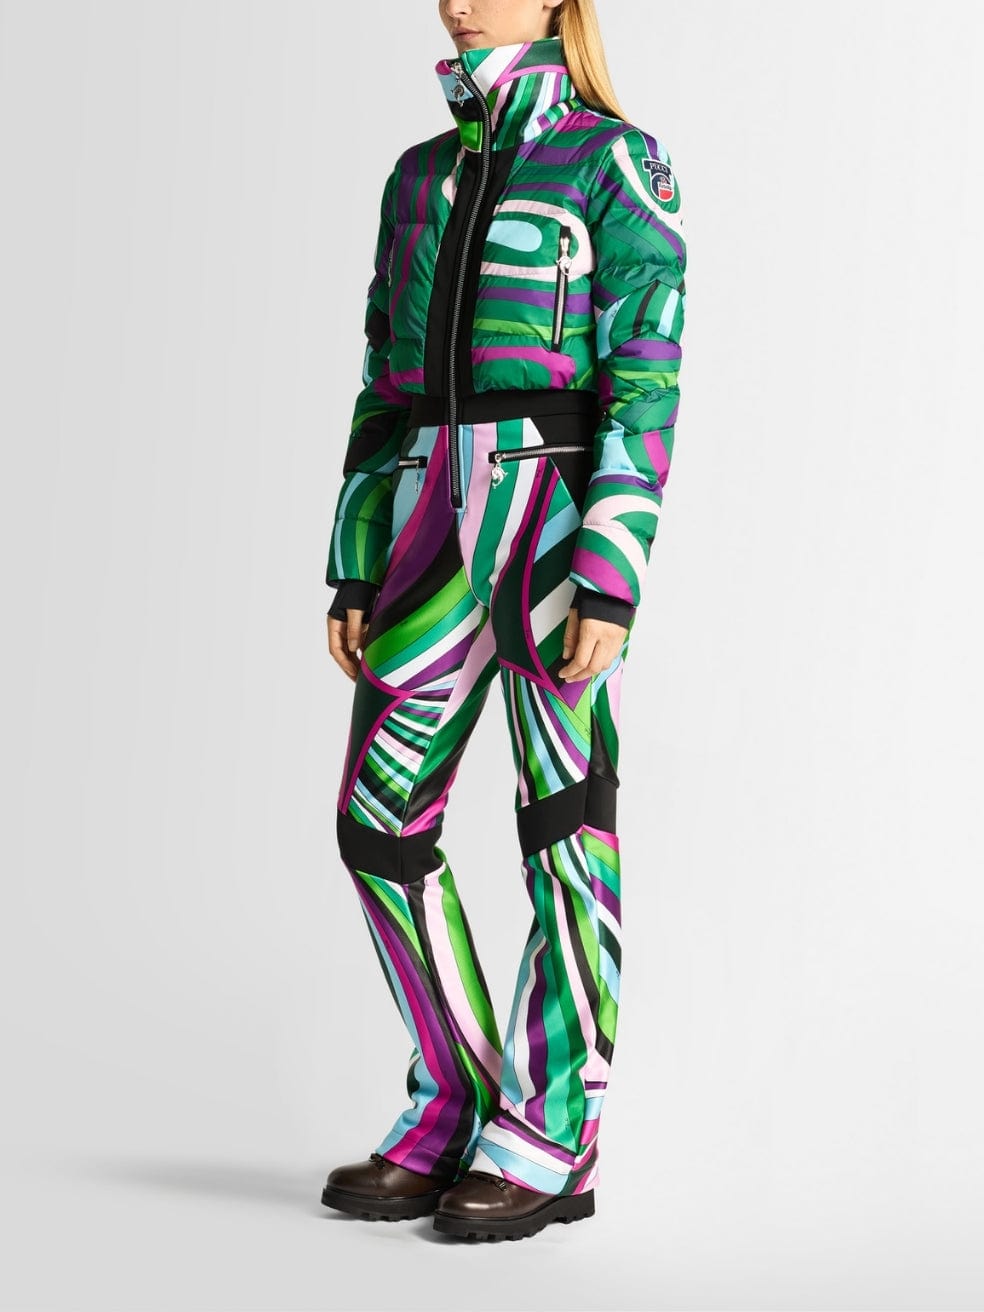 Clarisse Pucci Ski Suit